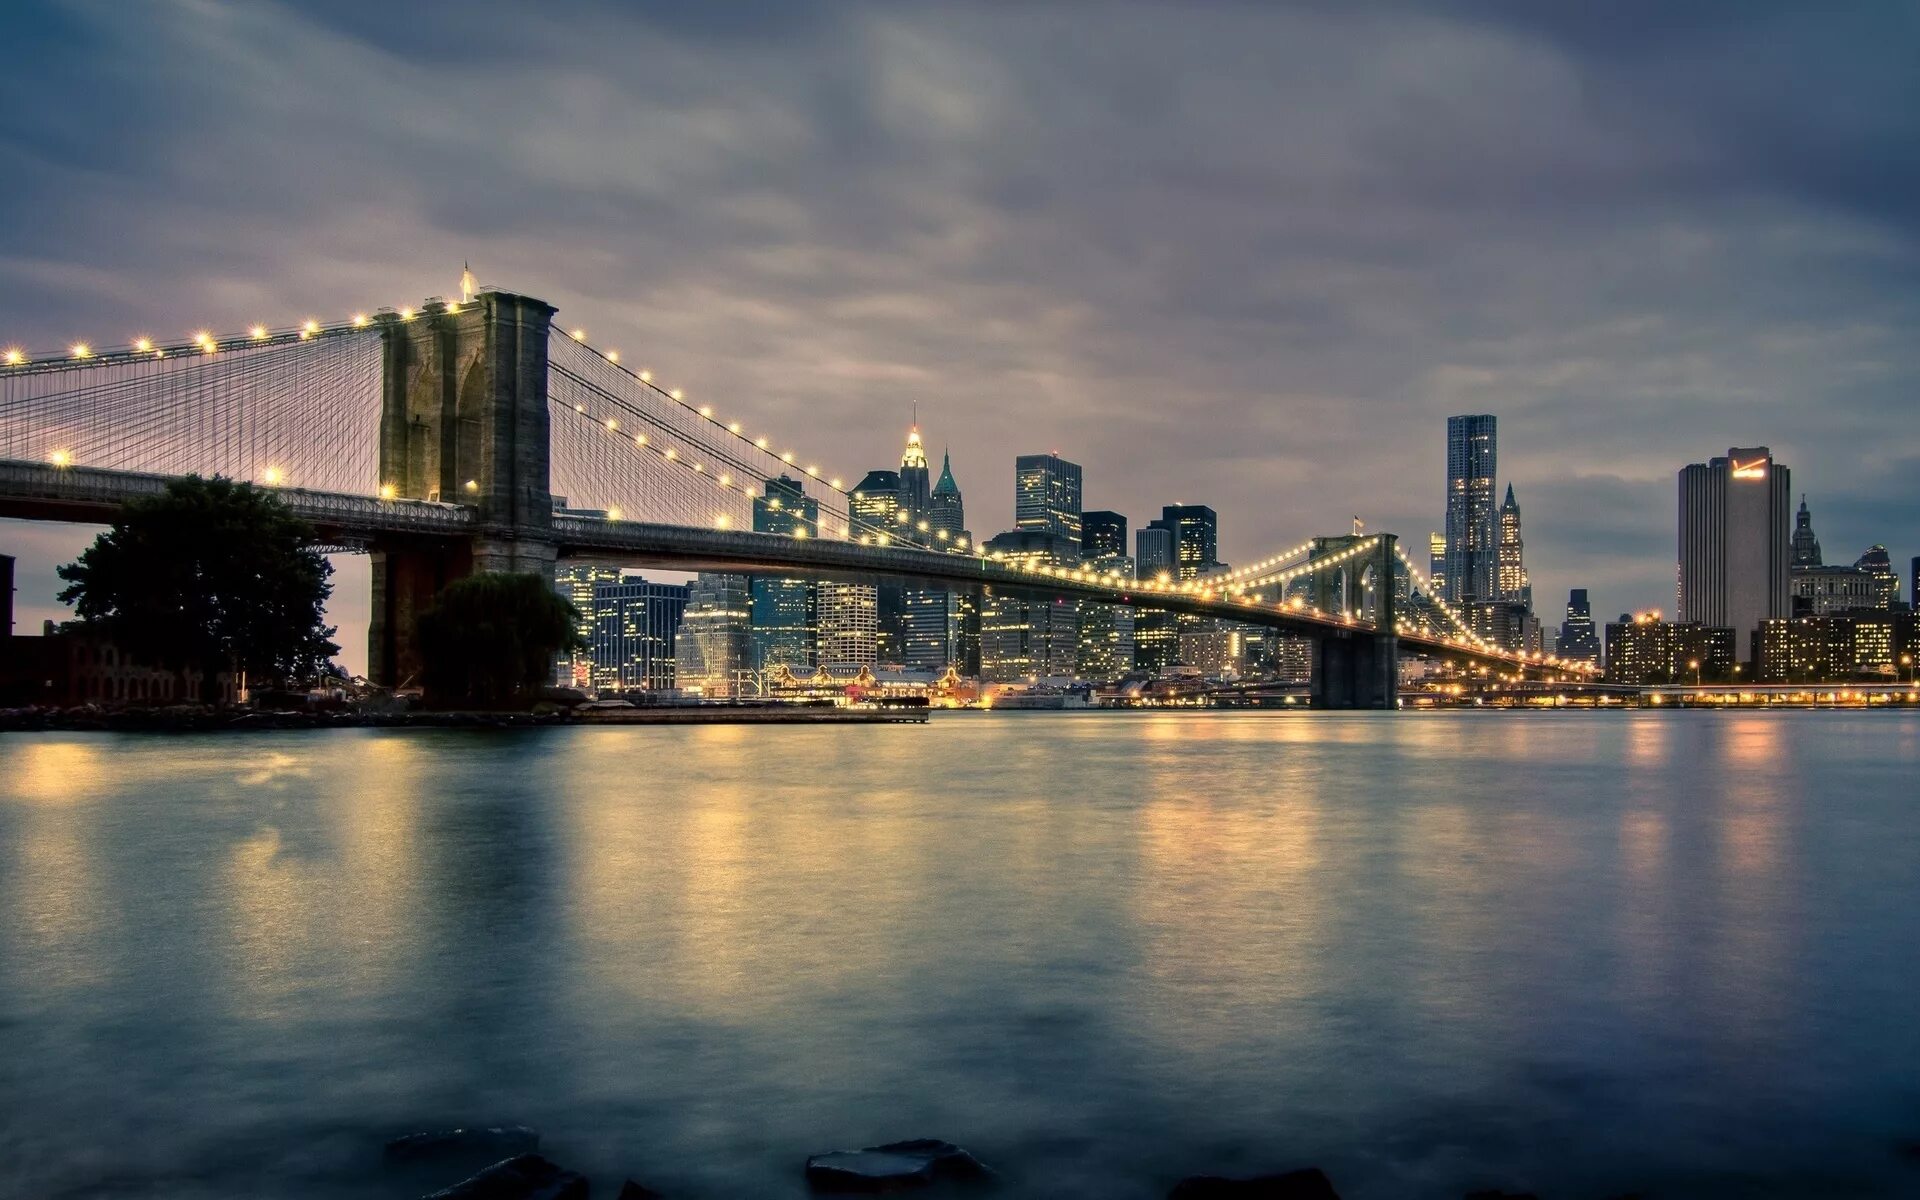 Буринский мост Нью-Йорк. Манхэттен мост Нью-Йорк. Бруклинский мост (г. Нью-Йорк). Бруклинский мост Нью-Йорк панорама. Обои для рабочего стола 2560х1440 высокого